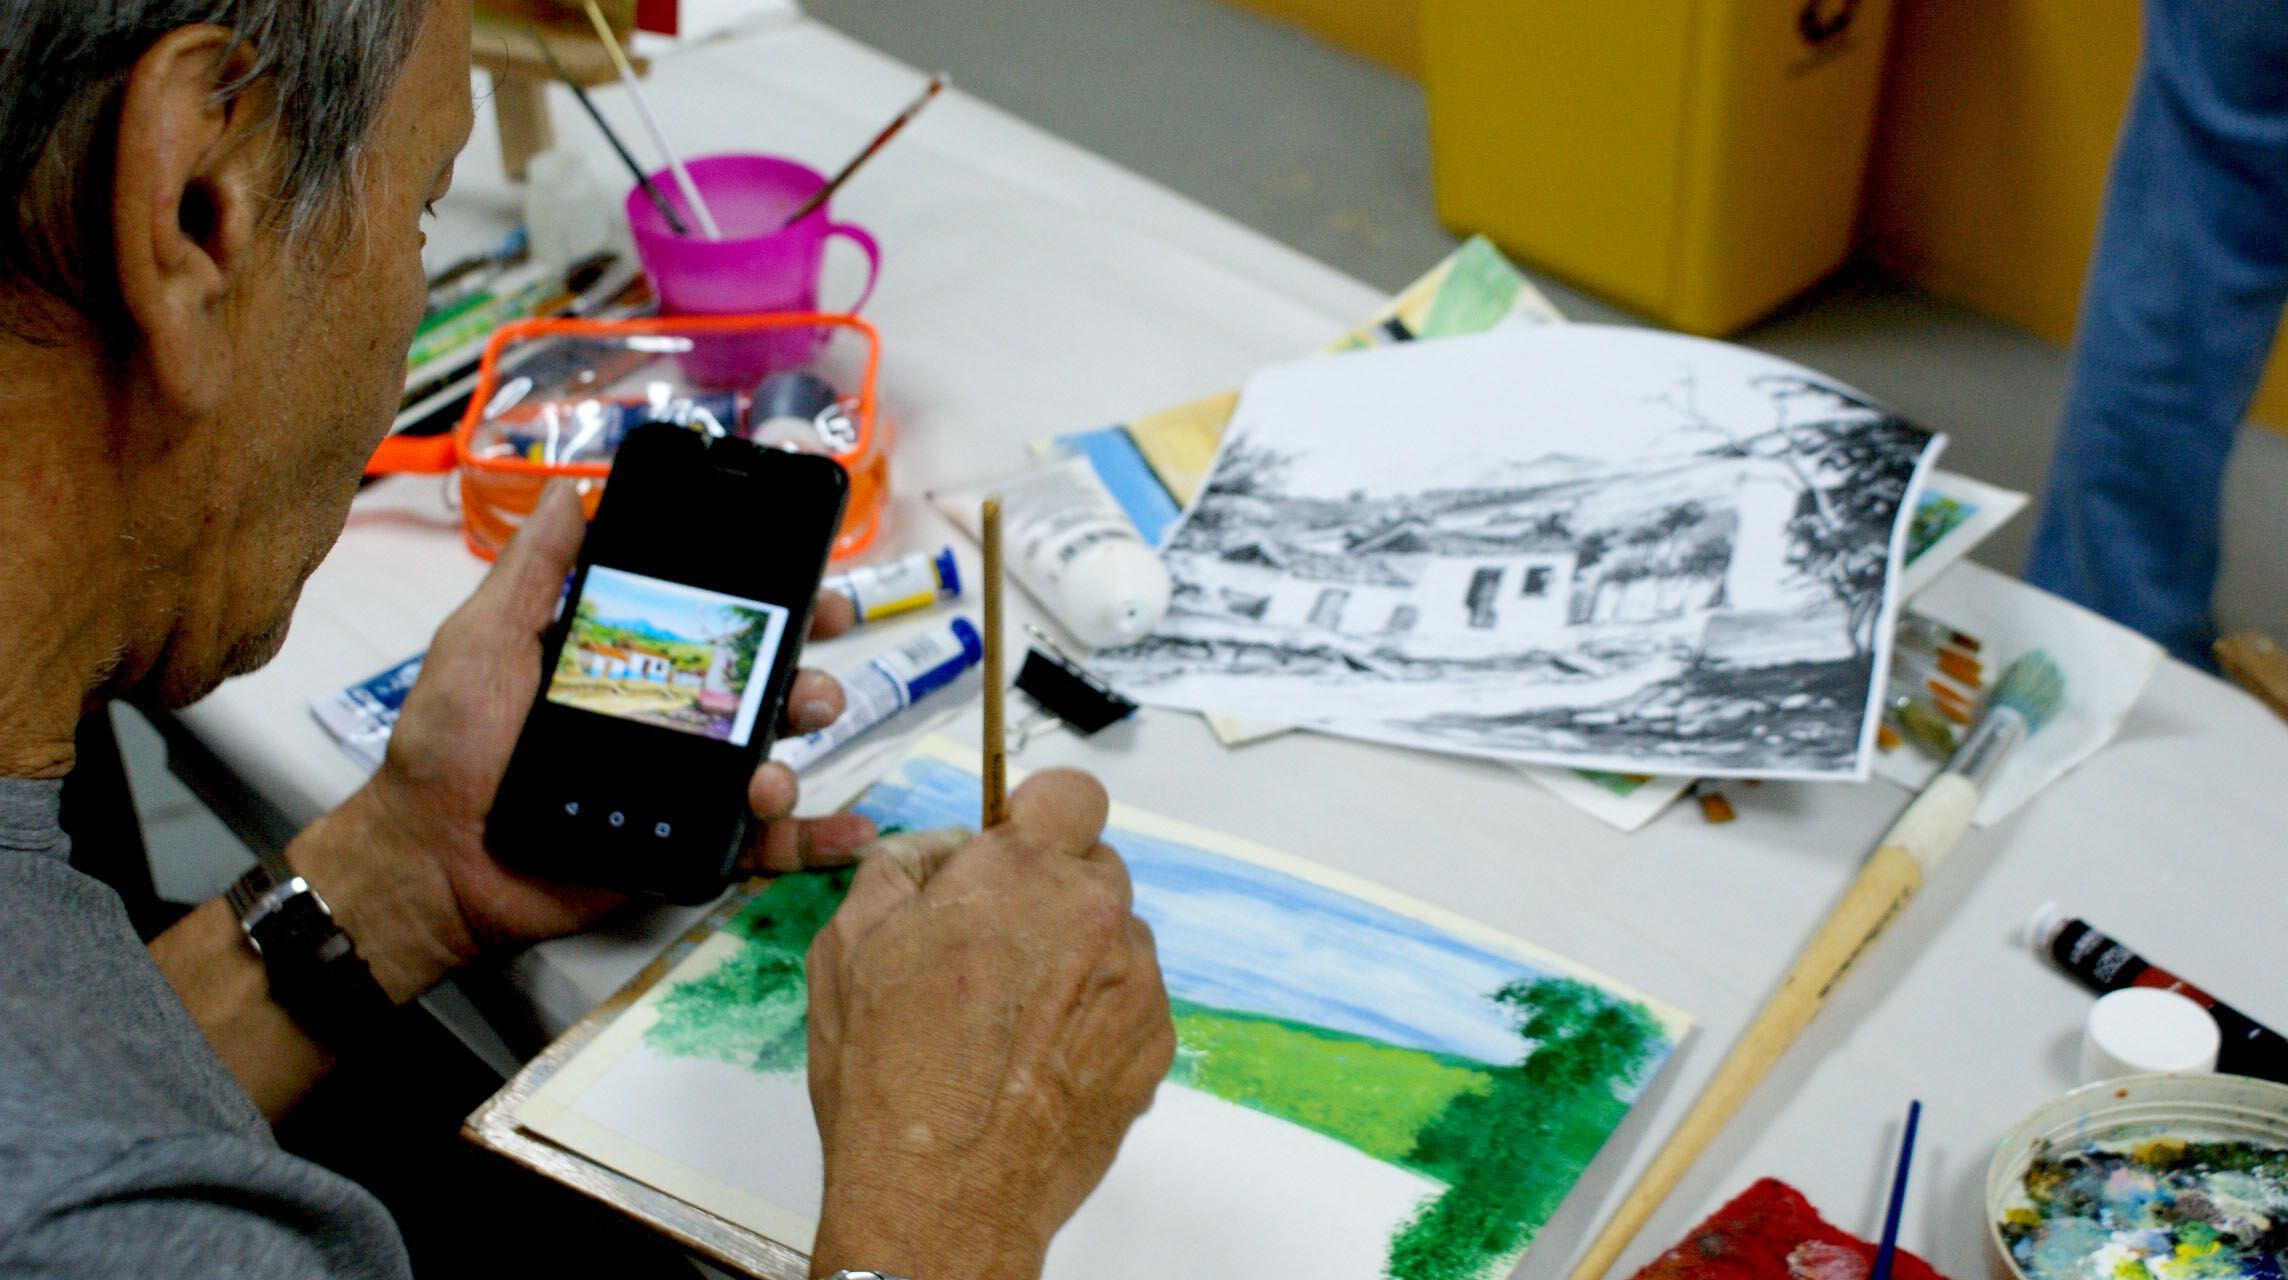 Pintura es una de las opciones en los cursos que se ofrecen para mayores de 65 años, tanto presenciales como virtuales. Foto: Ageco